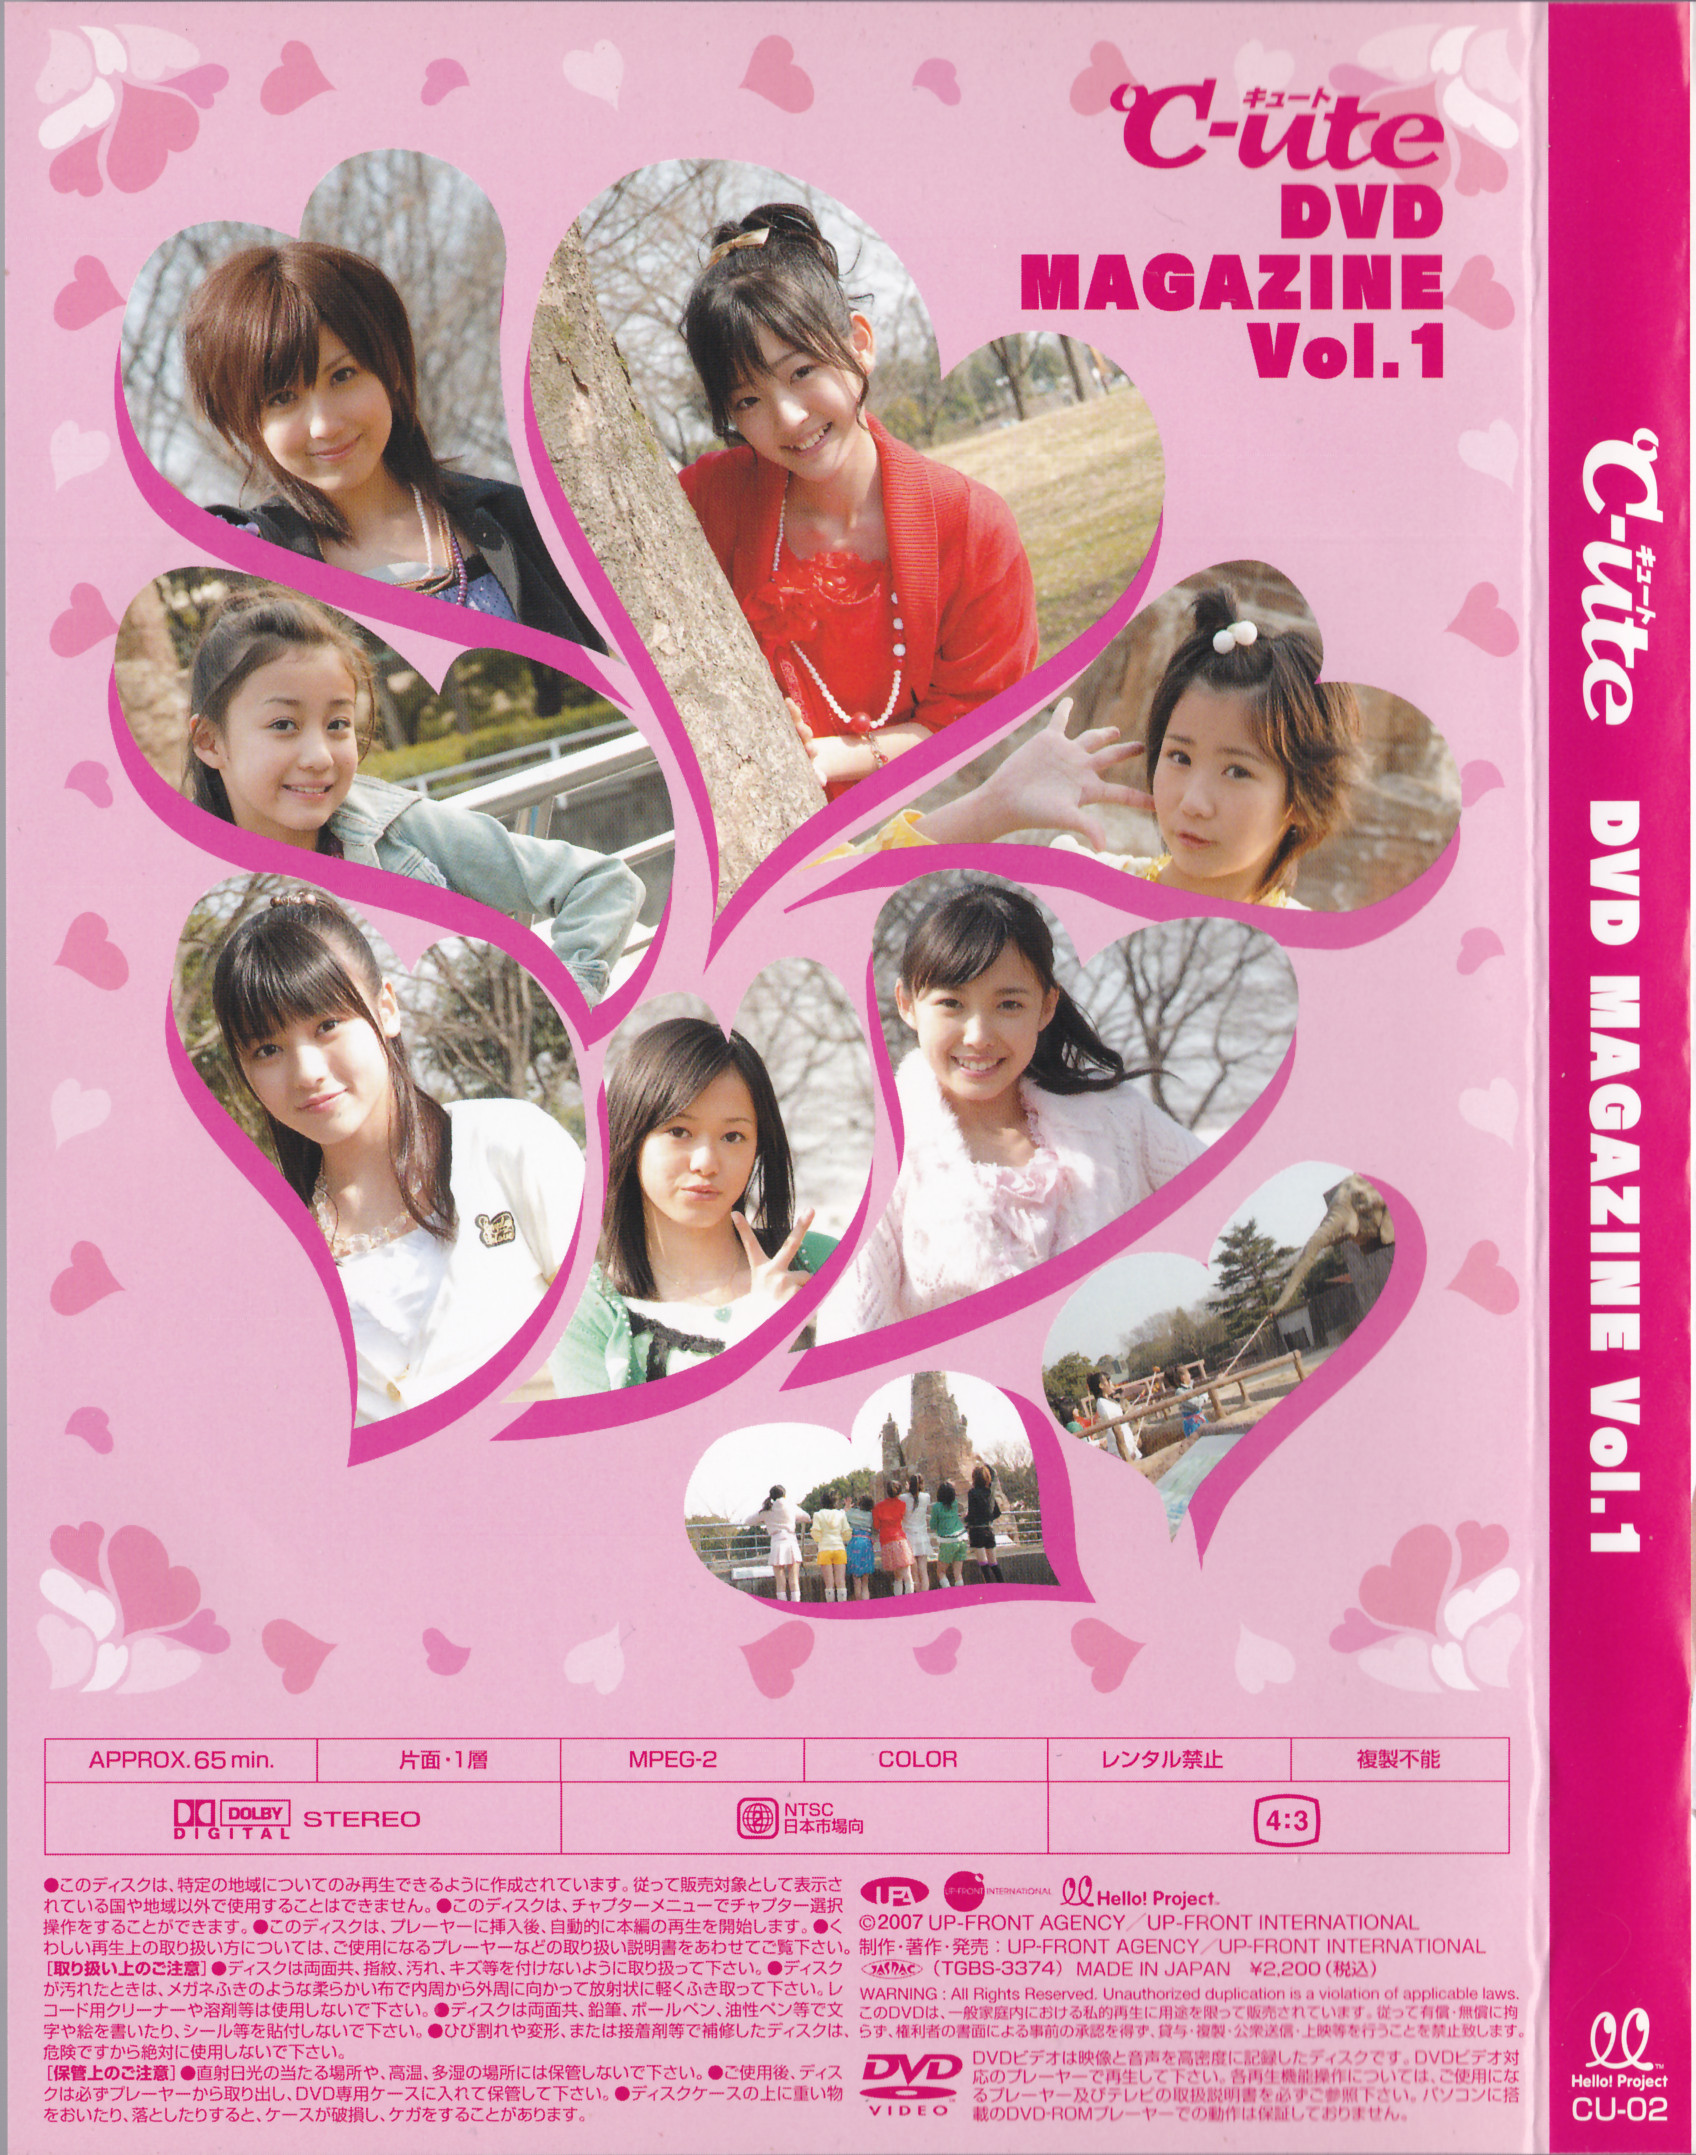 ℃-ute DVD Magazine Vol.1 | Hello! Project Wiki | Fandom